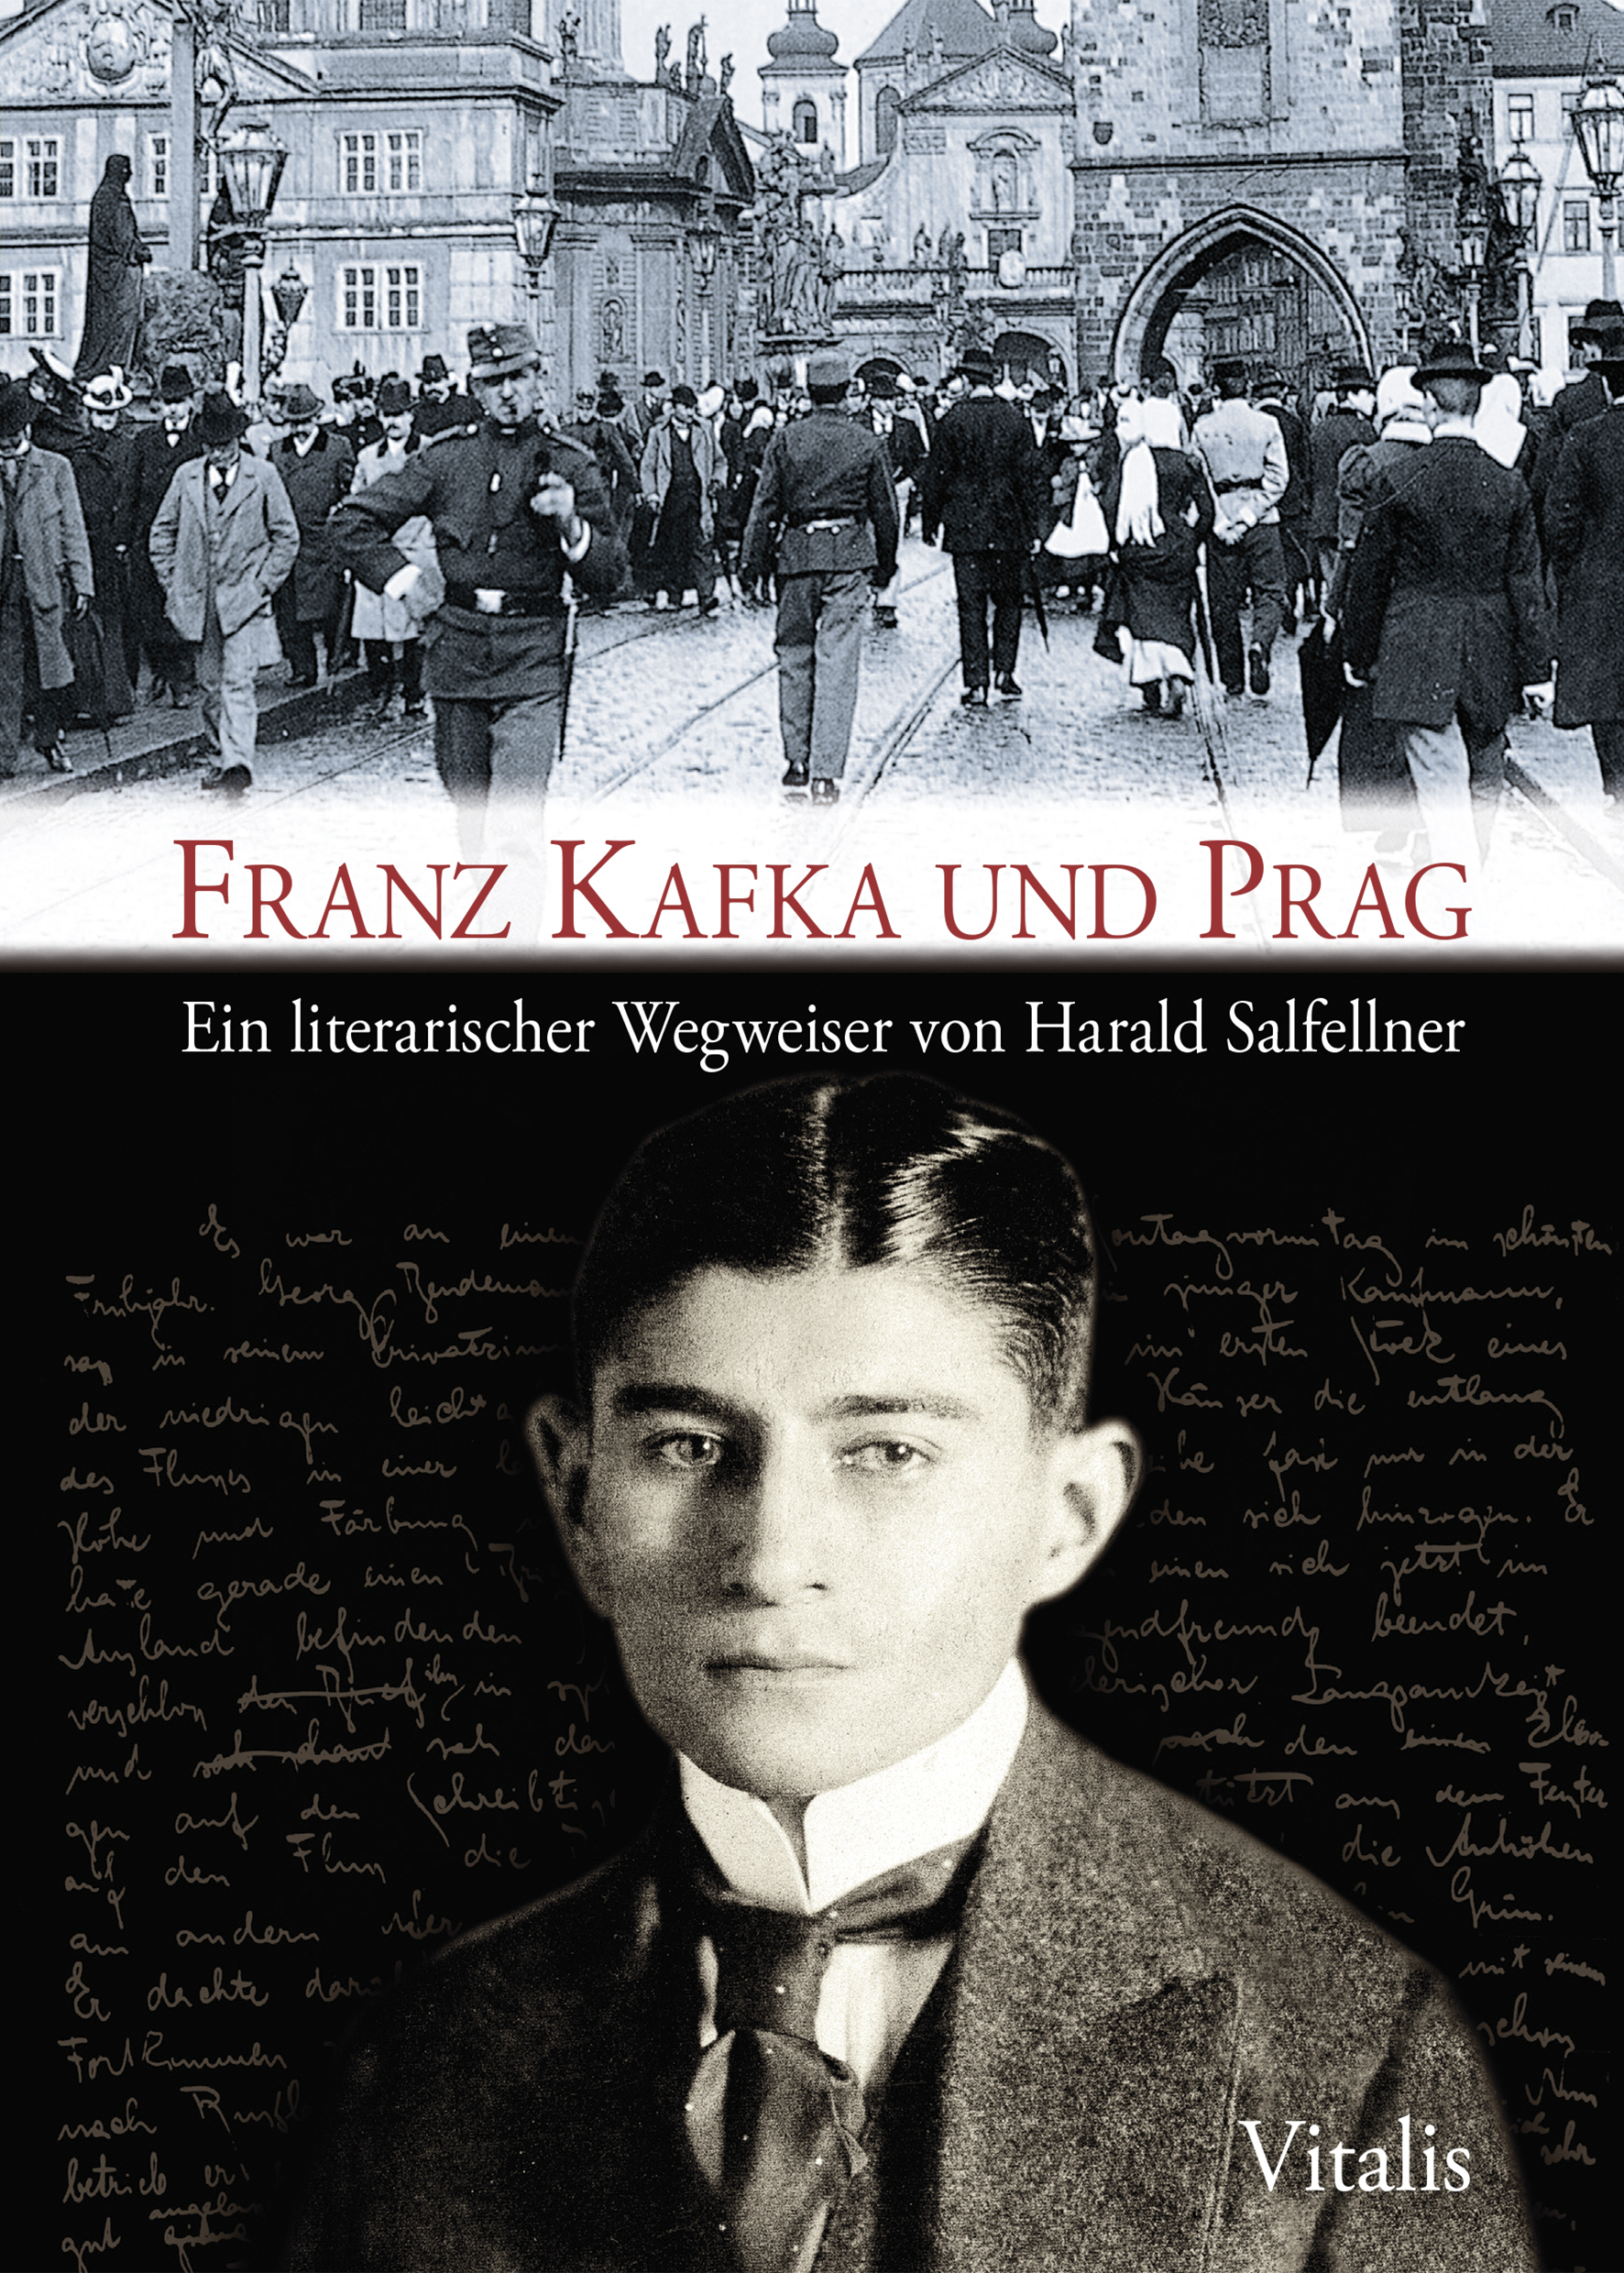 Franz Kafka Und Prag Harald Salfellnerpavel Cinkpablo Grosschmid